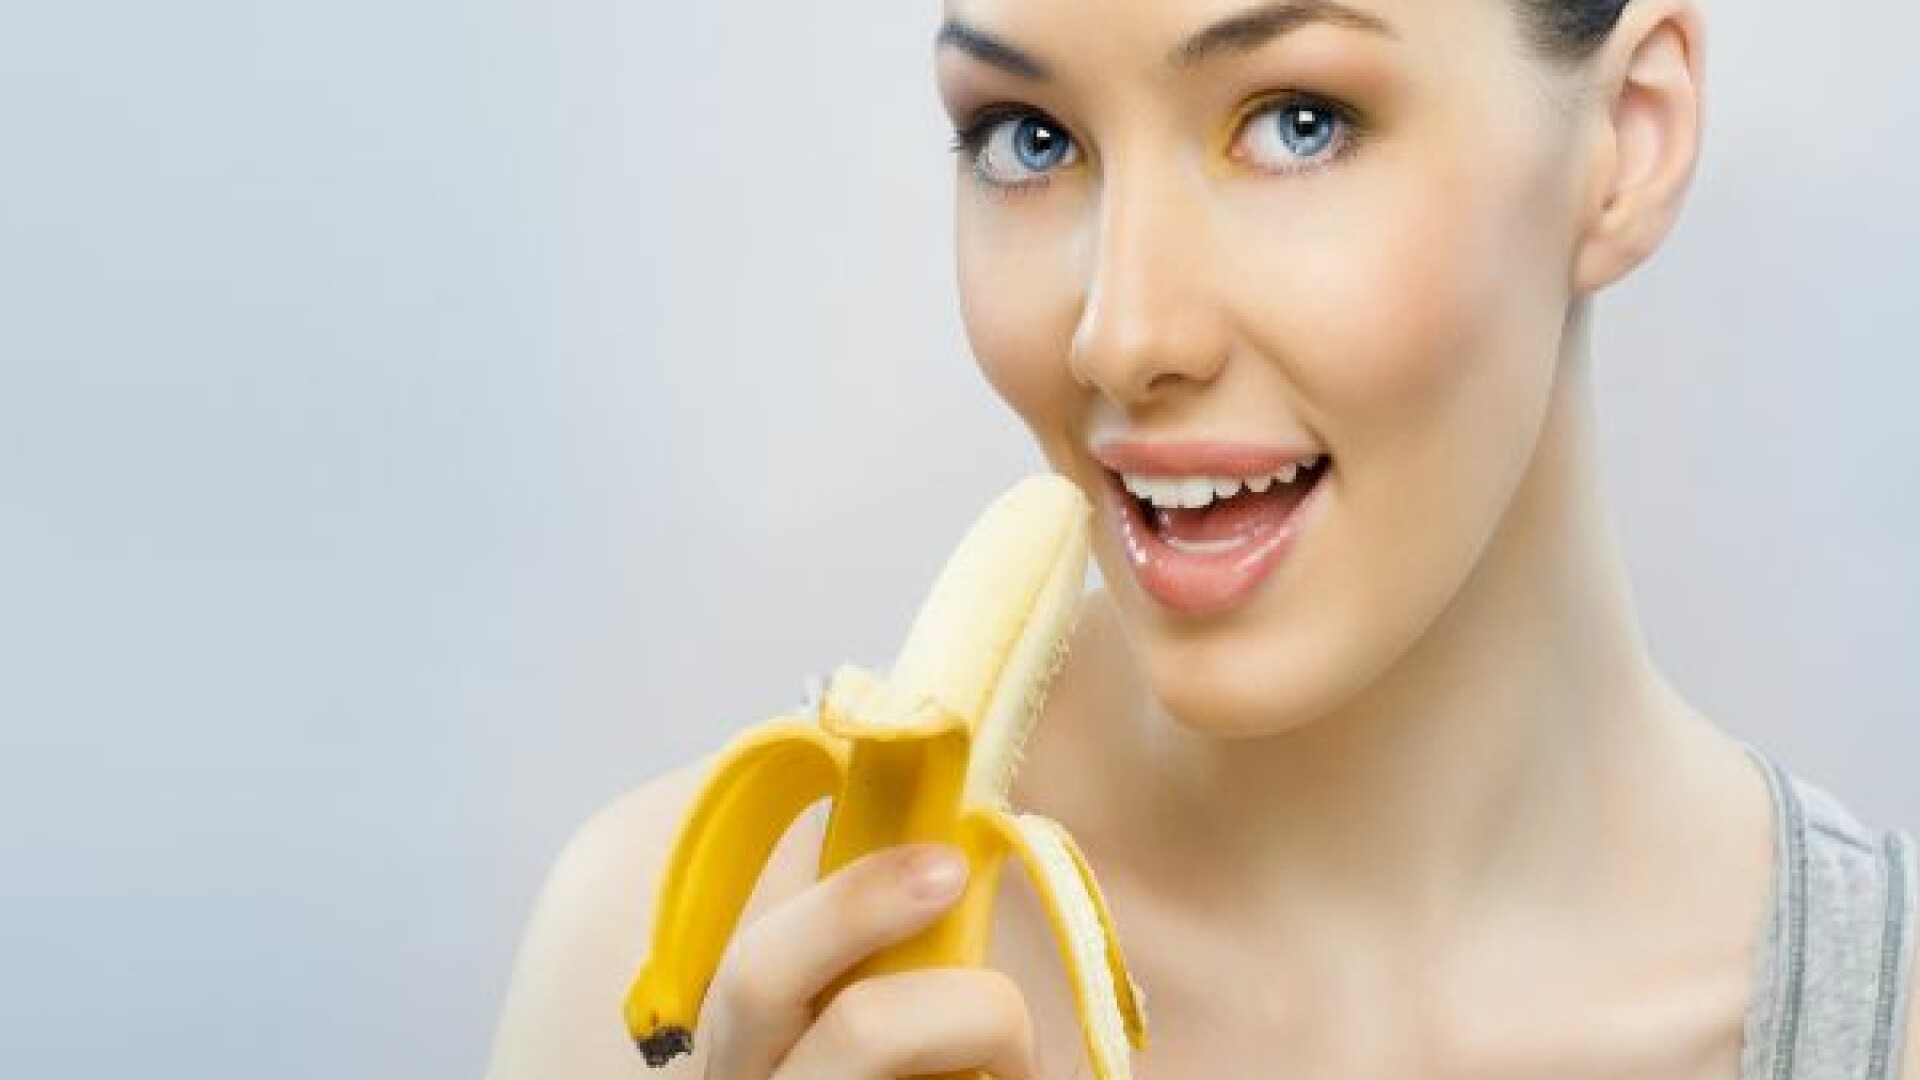 femeie mancand banana